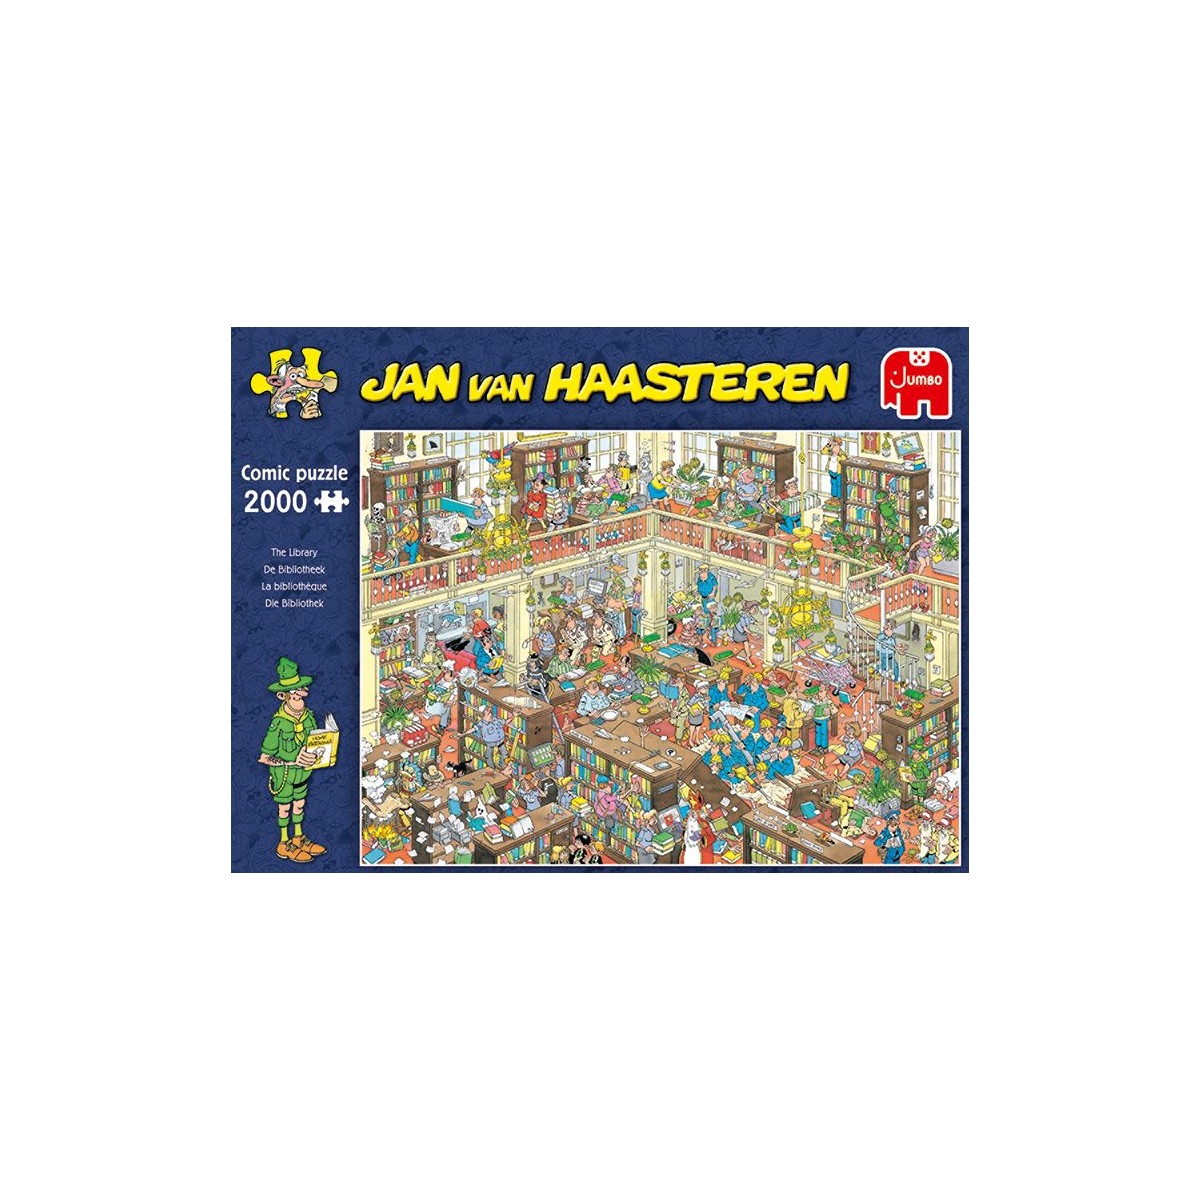 Jumbo Spiele - Jan van Haasteren - Die Bibliothek, 2000 Teile